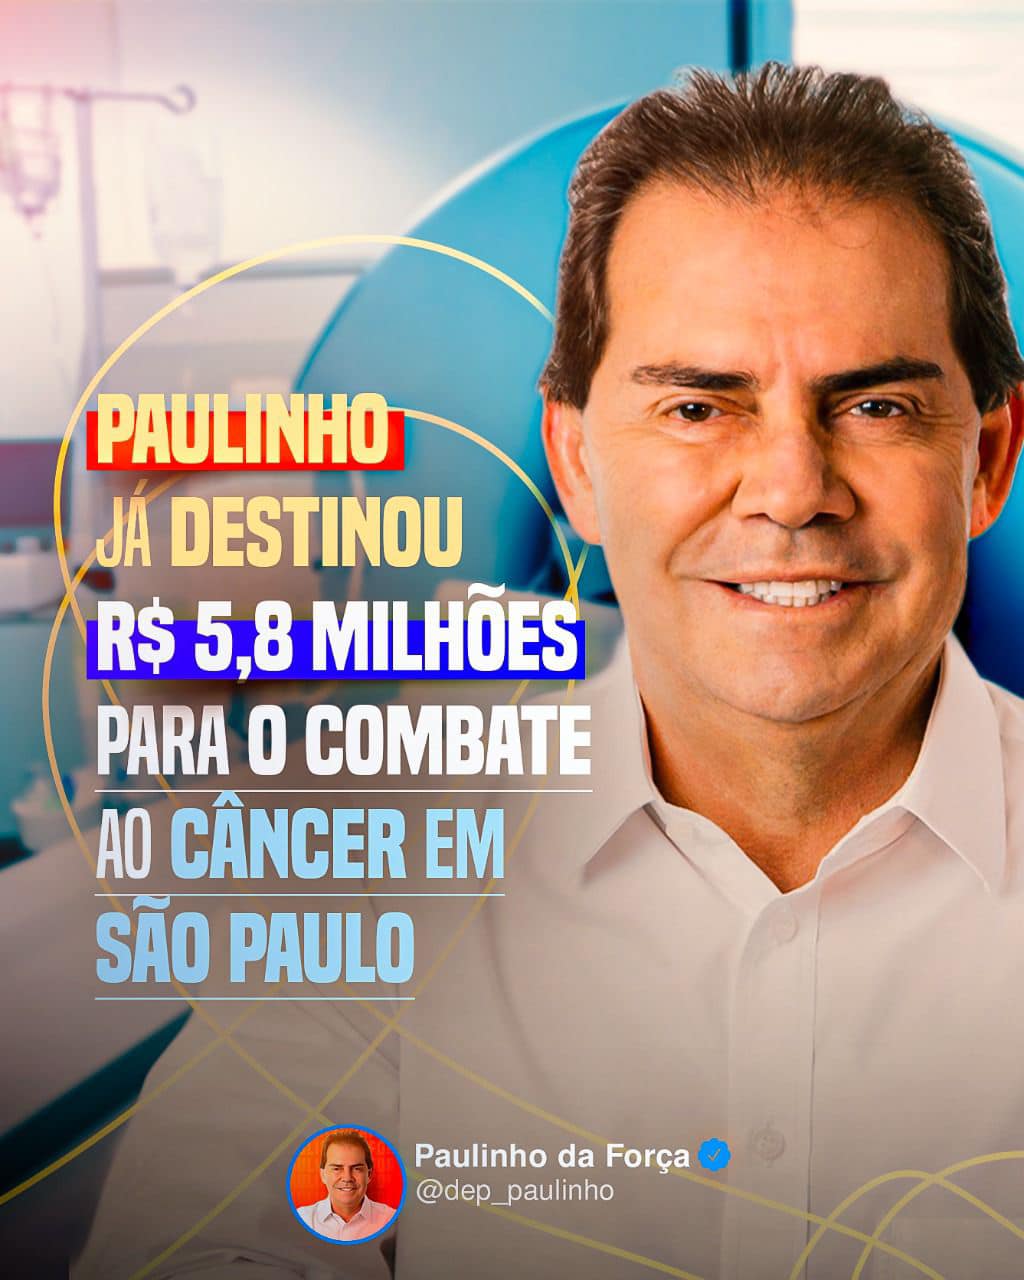 deputado-paulinho-da-forca-destina-recursos-para-hospitais-oncologicos - Acao Comunicativa